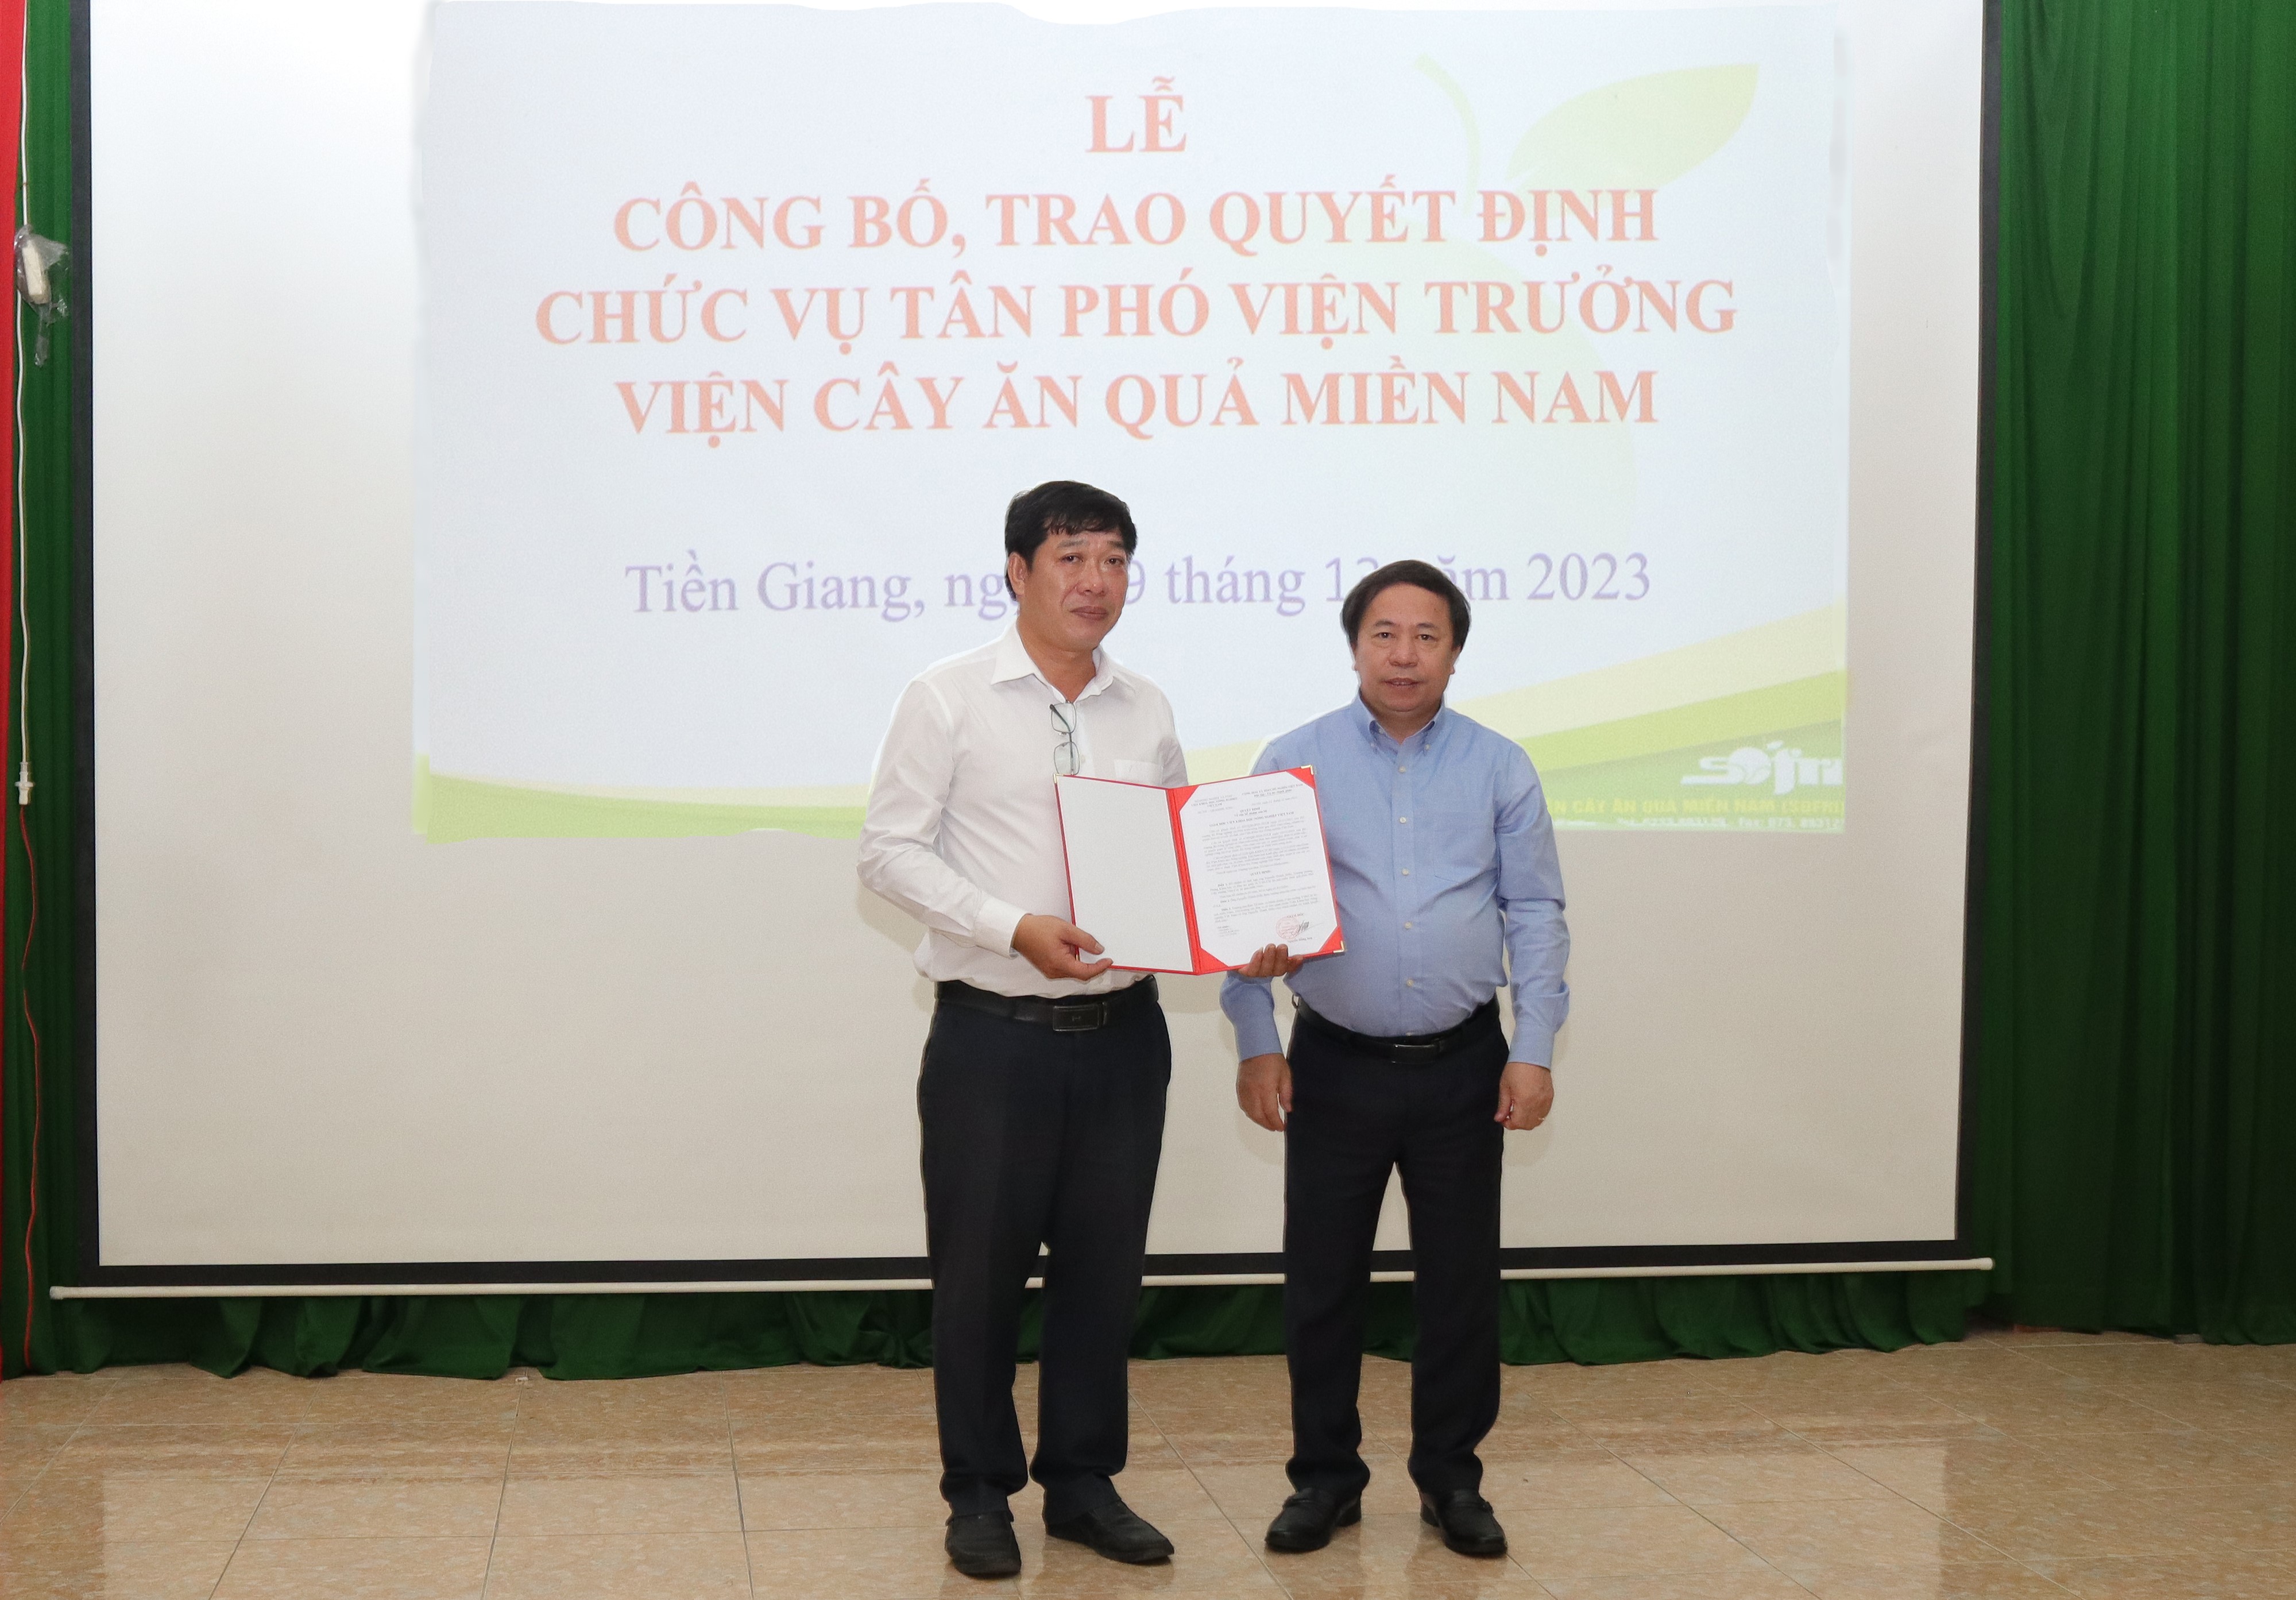 GS. TS. Nguyễn Hồng Sơn trao quyết định cho TS. Nguyễn Thành Hiếu